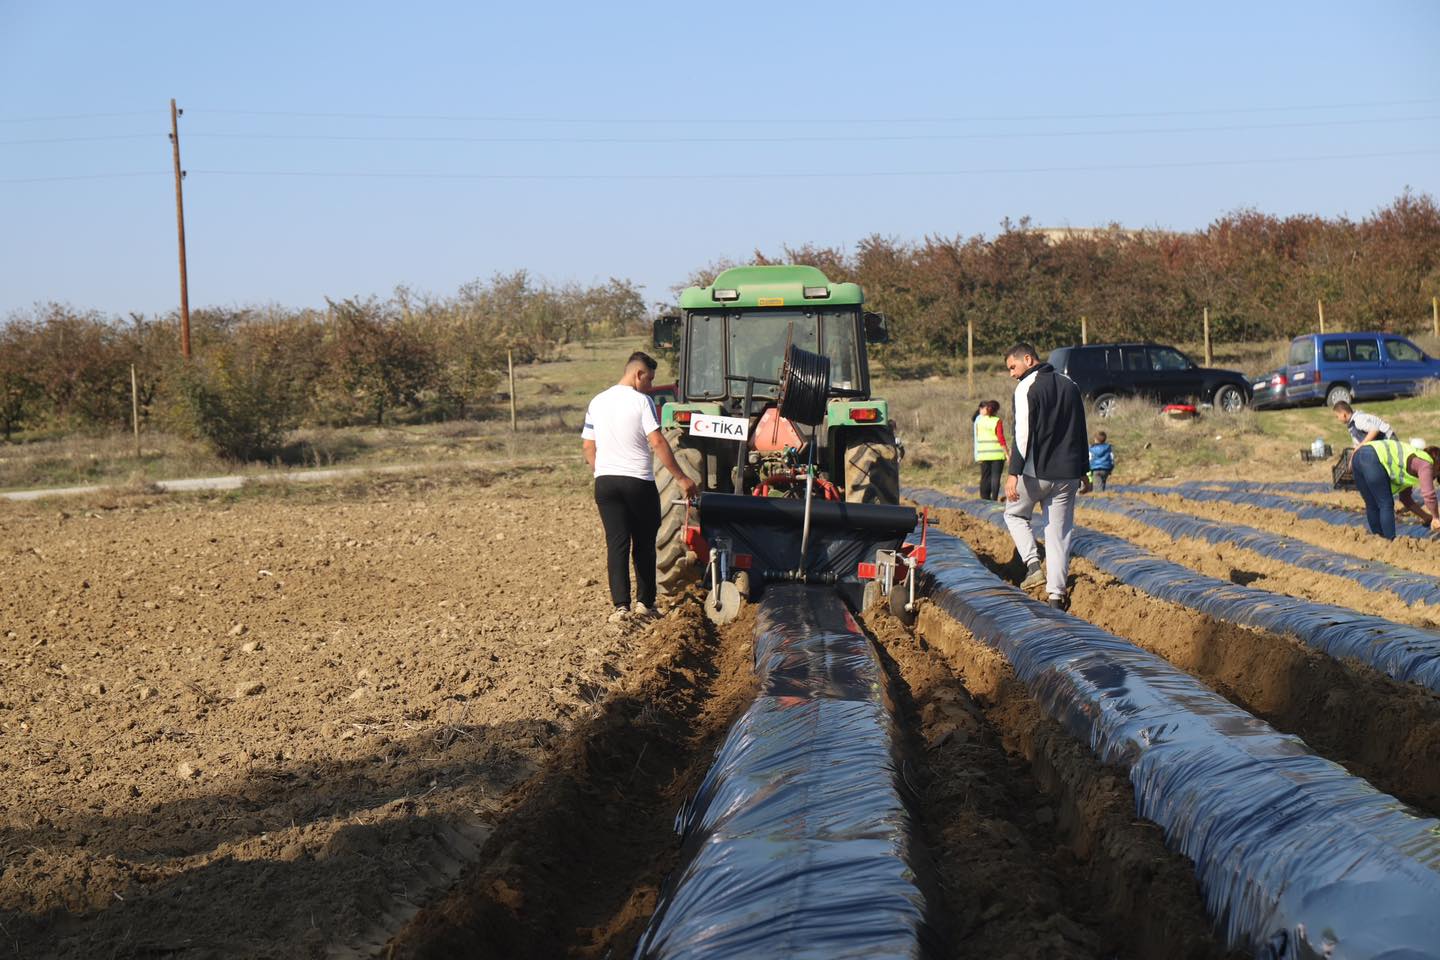 TİKA, K. Makedonya’da kırsal kalkınmayı desteklemeye devam ediyor